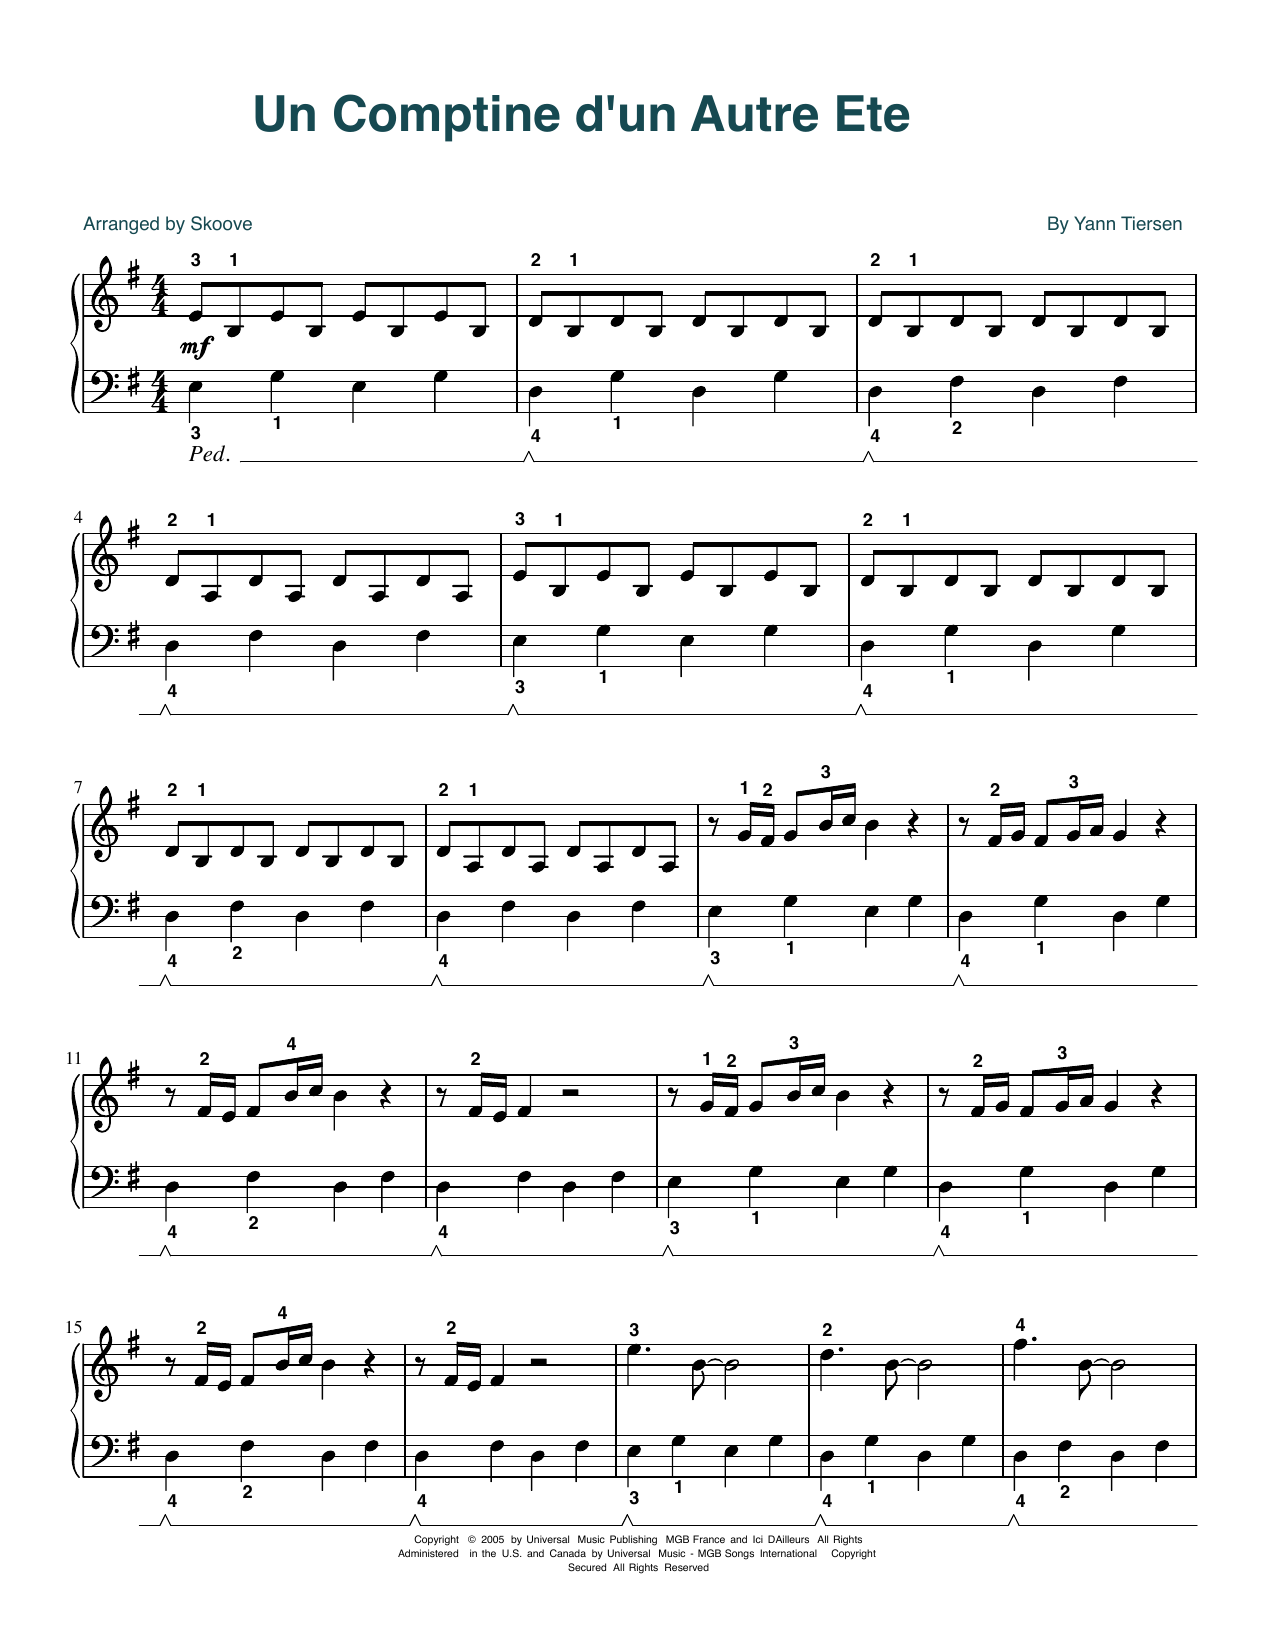 Yann Tiersen Comptine d'un autre été (arr. Skoove) Sheet Music Notes & Chords for Easy Piano - Download or Print PDF